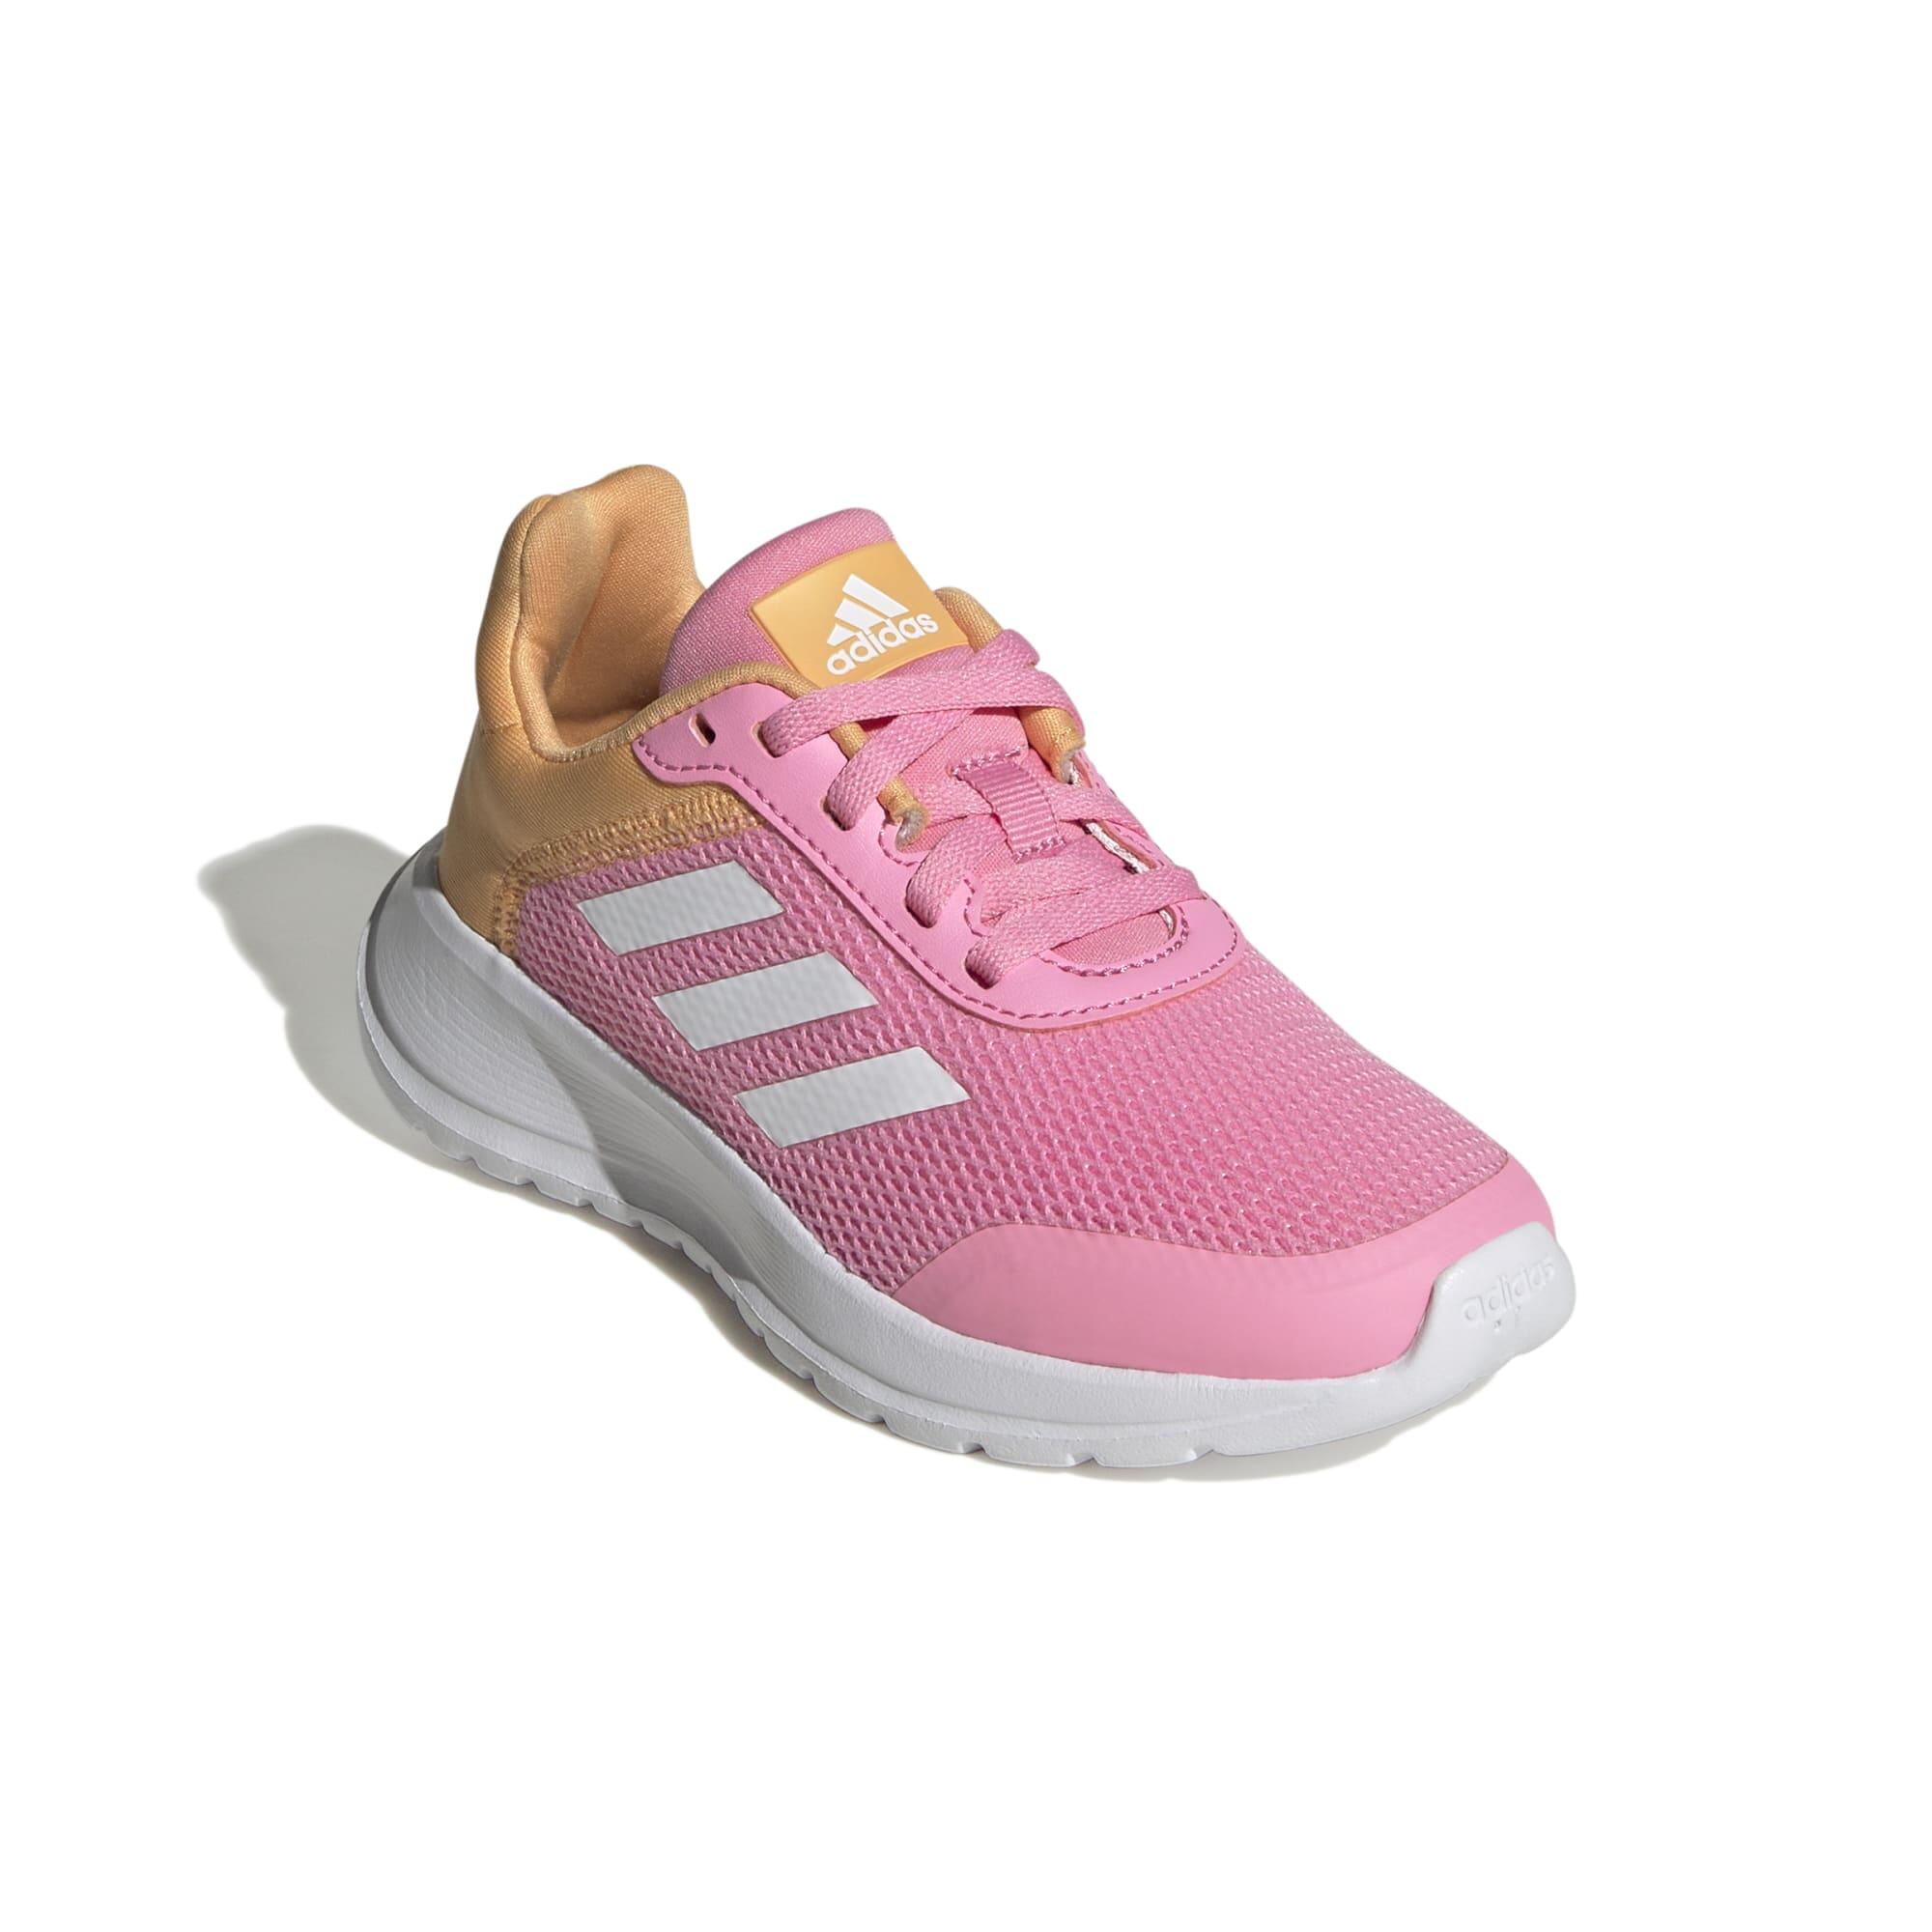 Kids' Shoes Tensaur Run - Pink / White / Orange 1/6